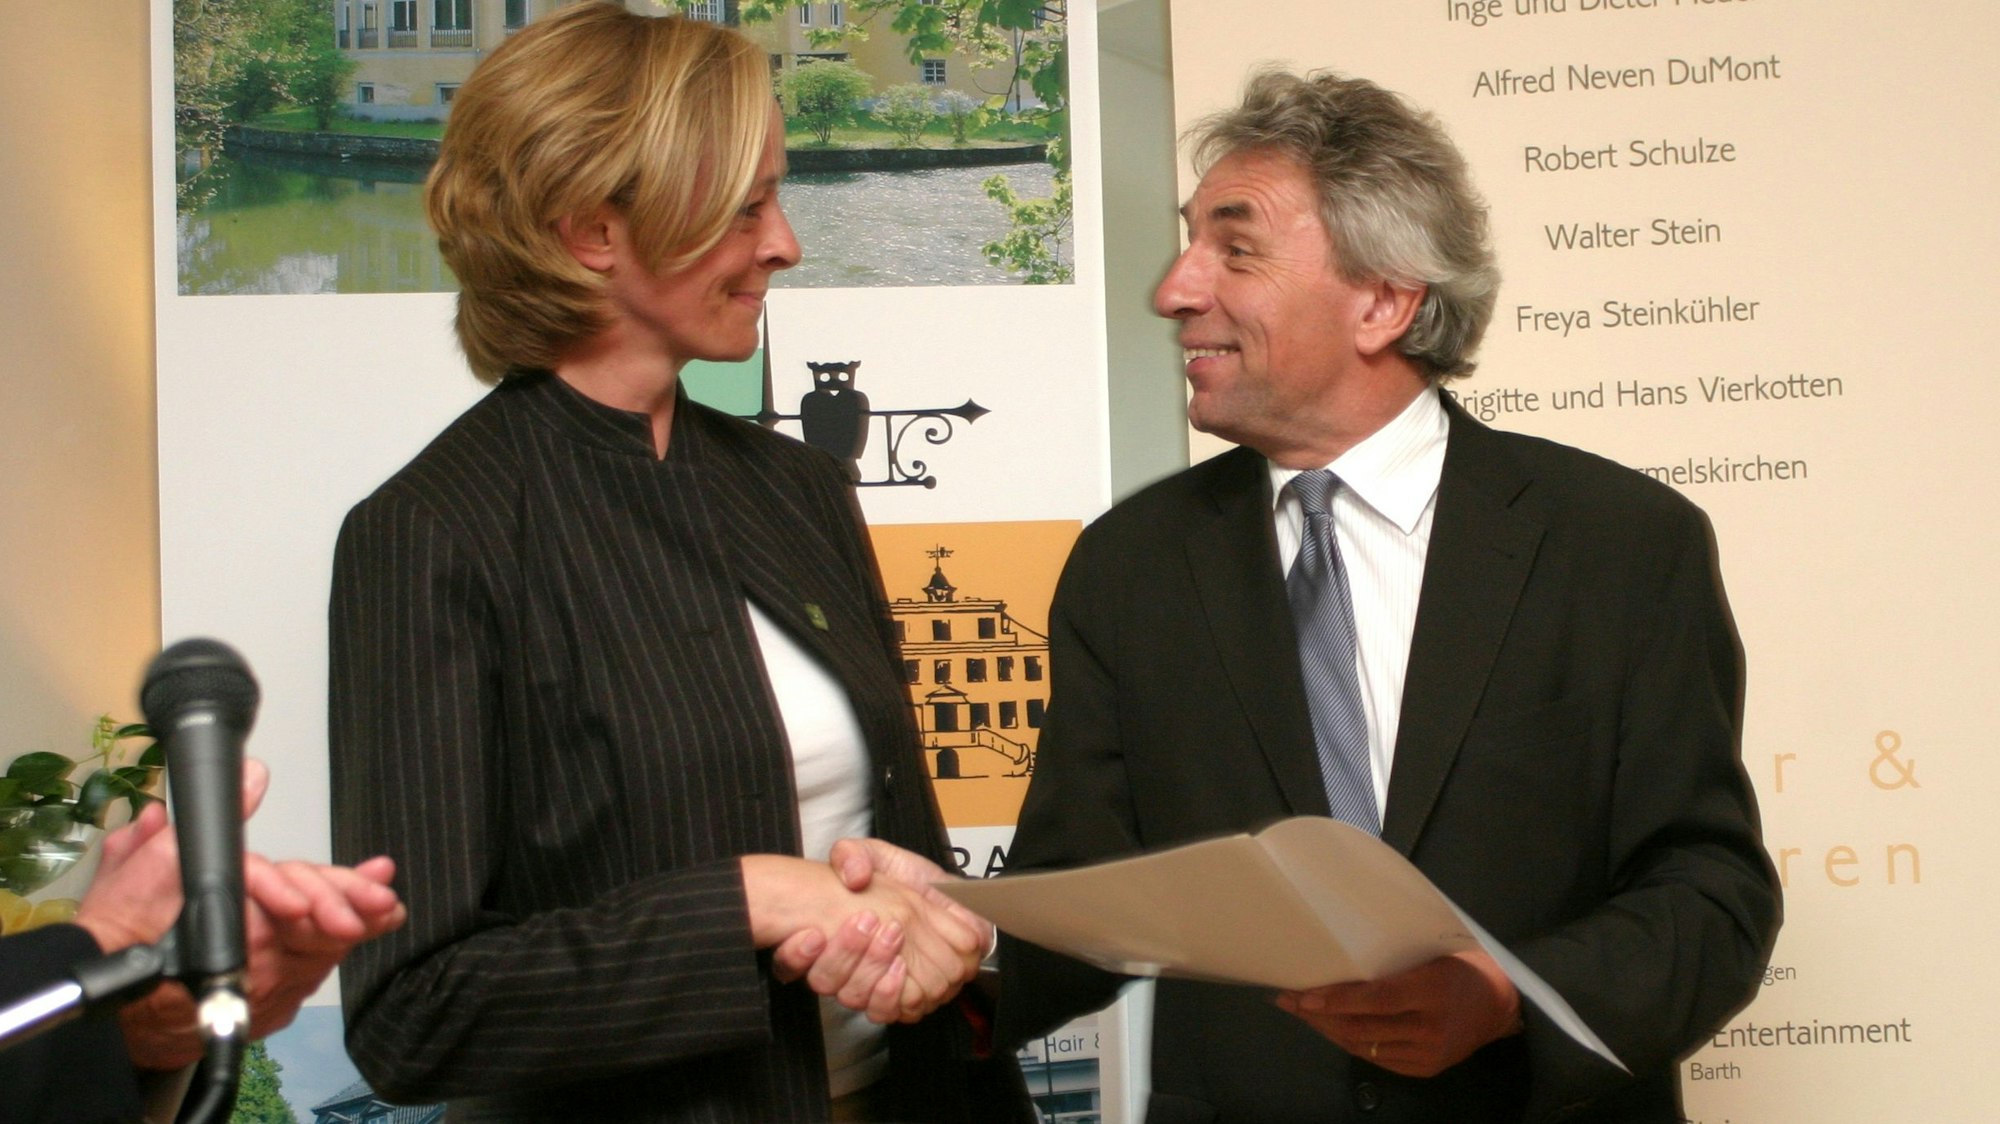 Regierungspräsident Jürgen Roters überreicht Urkunden für die ersten Stifter (l.), Isabella Neven DuMont nimmt die Urkunde für ihren Vater Prof. Alfred Neven DuMont entgegen.